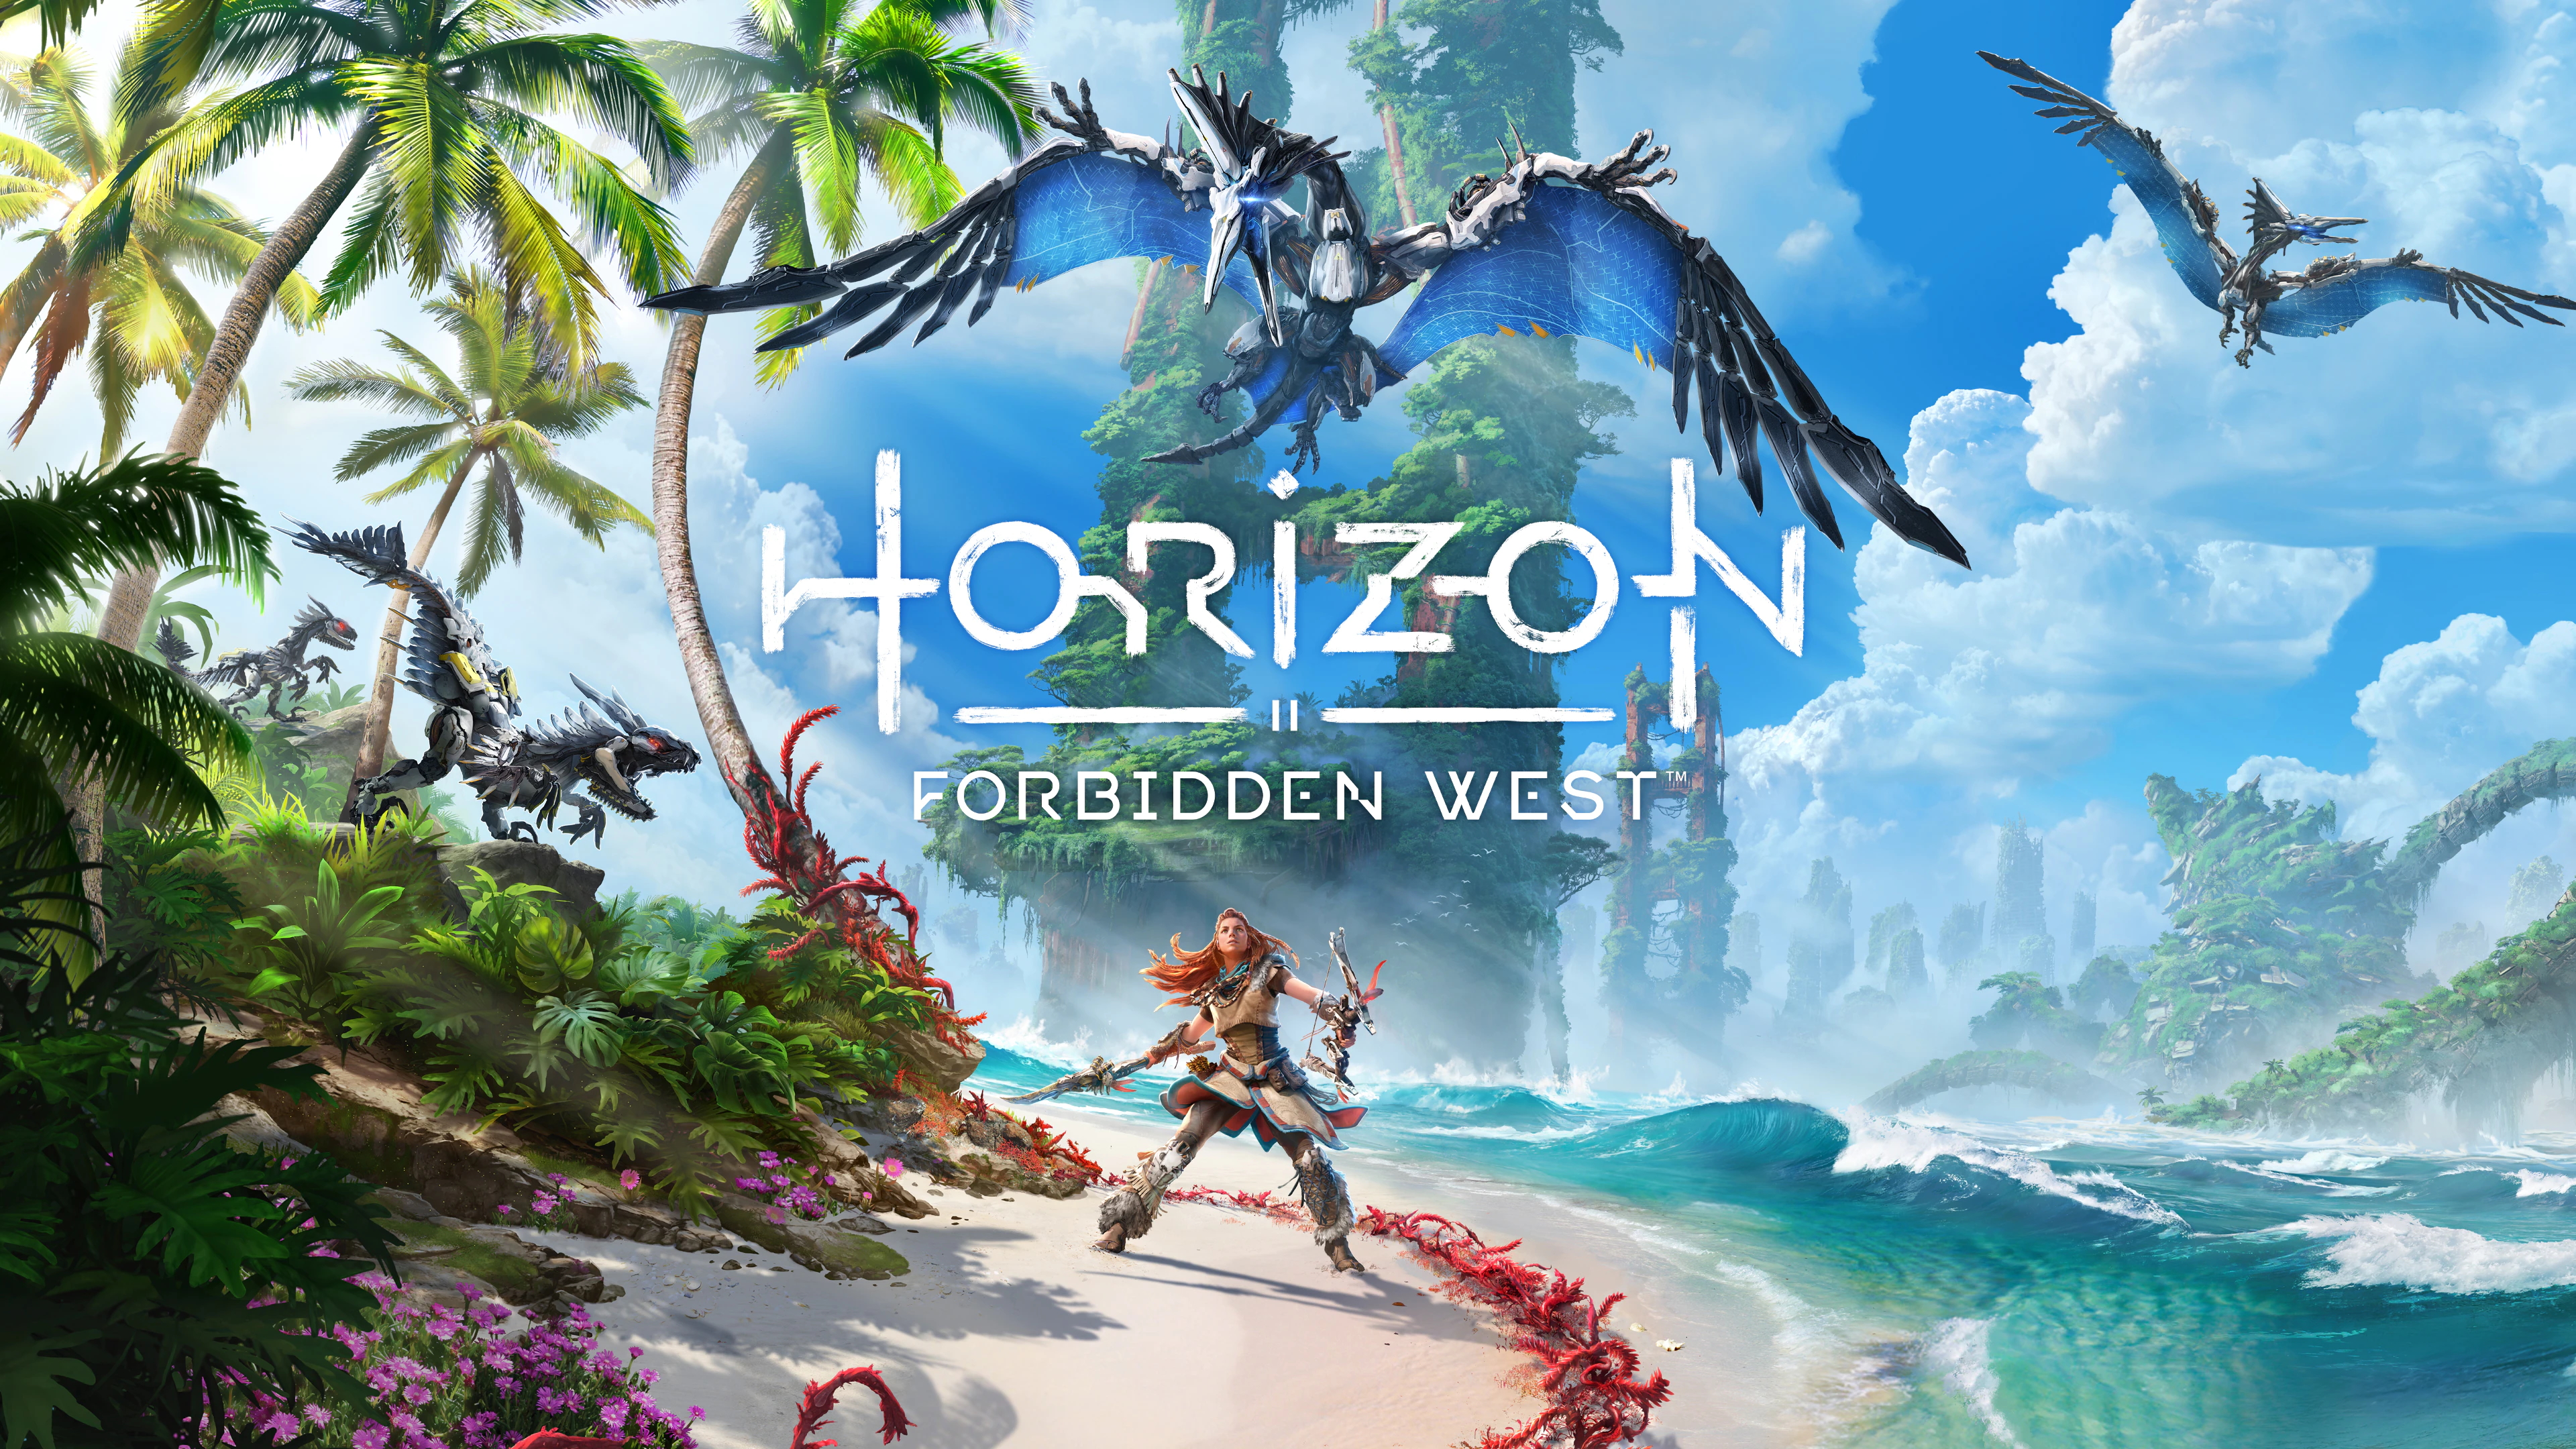 Horizon Forbidden West' Is a Worthy Sequel